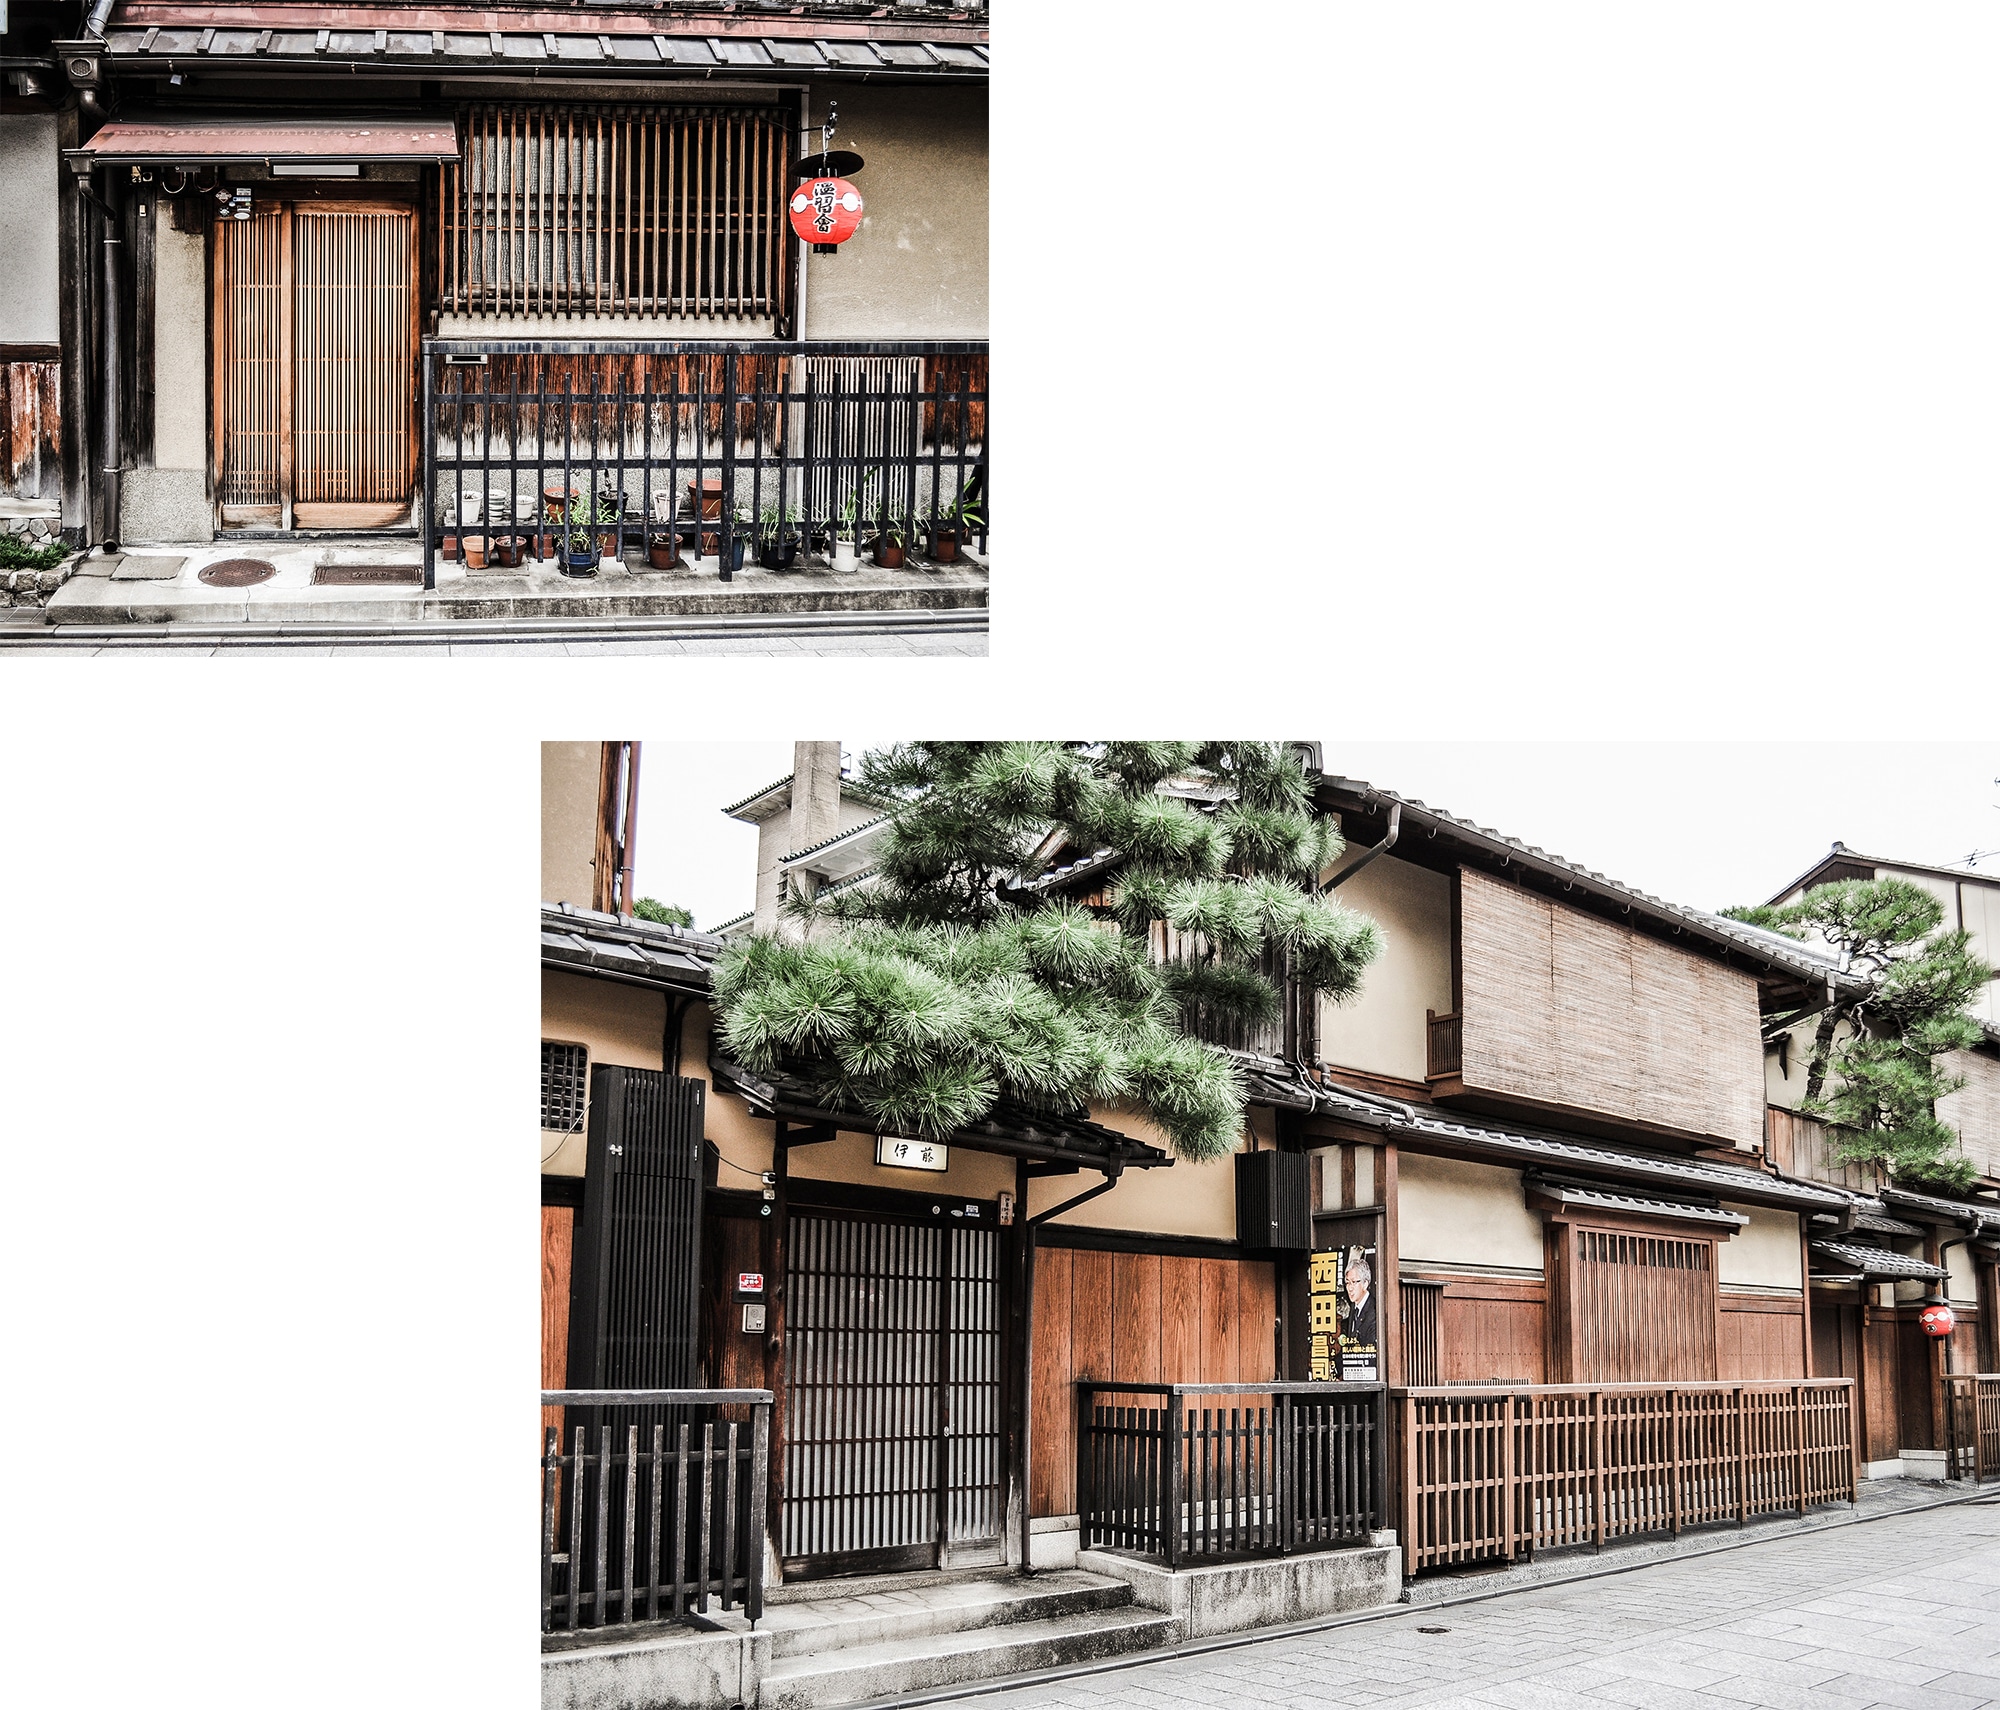 Le quartier de Gion à Kyoto au Japon